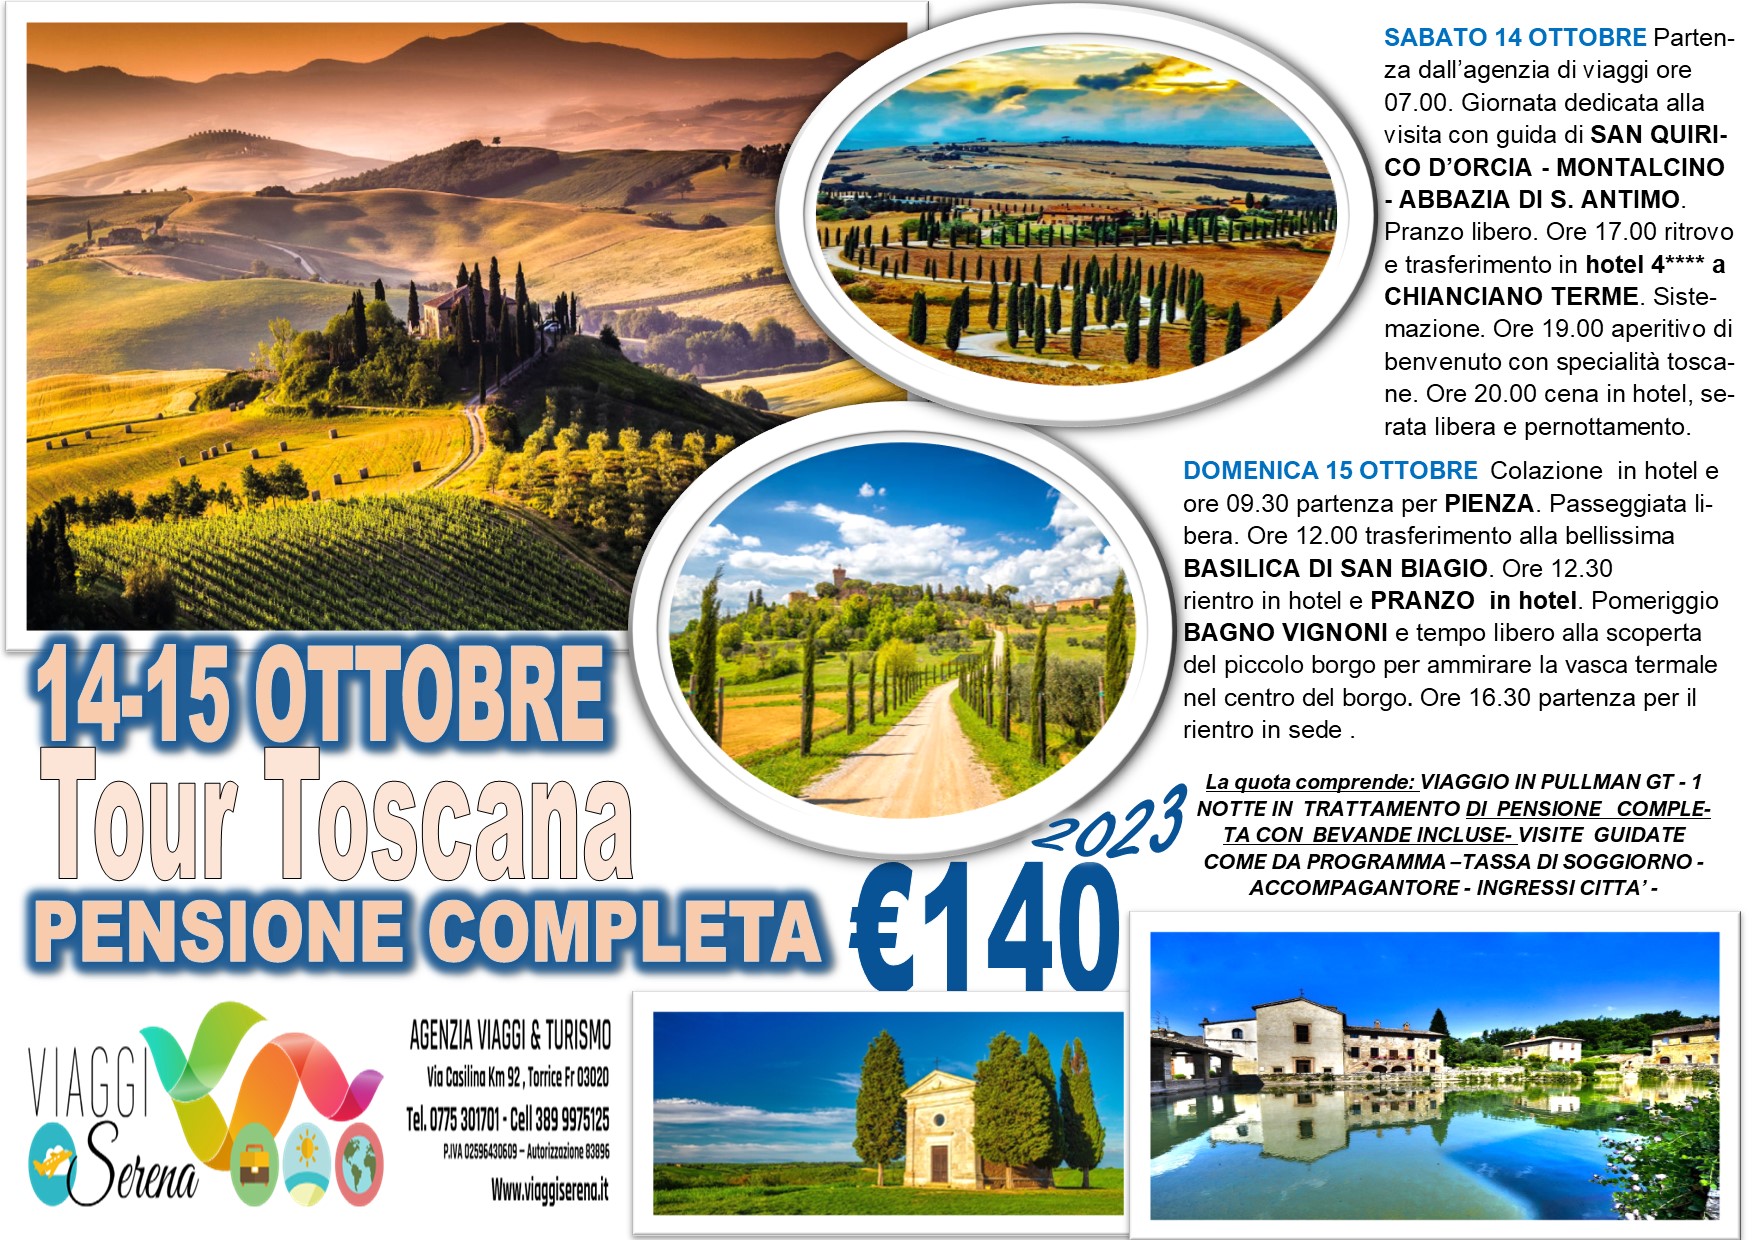 Viaggi di gruppo: Tour Toscana San Quirico, Pienza, Bagno Vignoni & Montalcino 14-15 Ottobre € 140,00